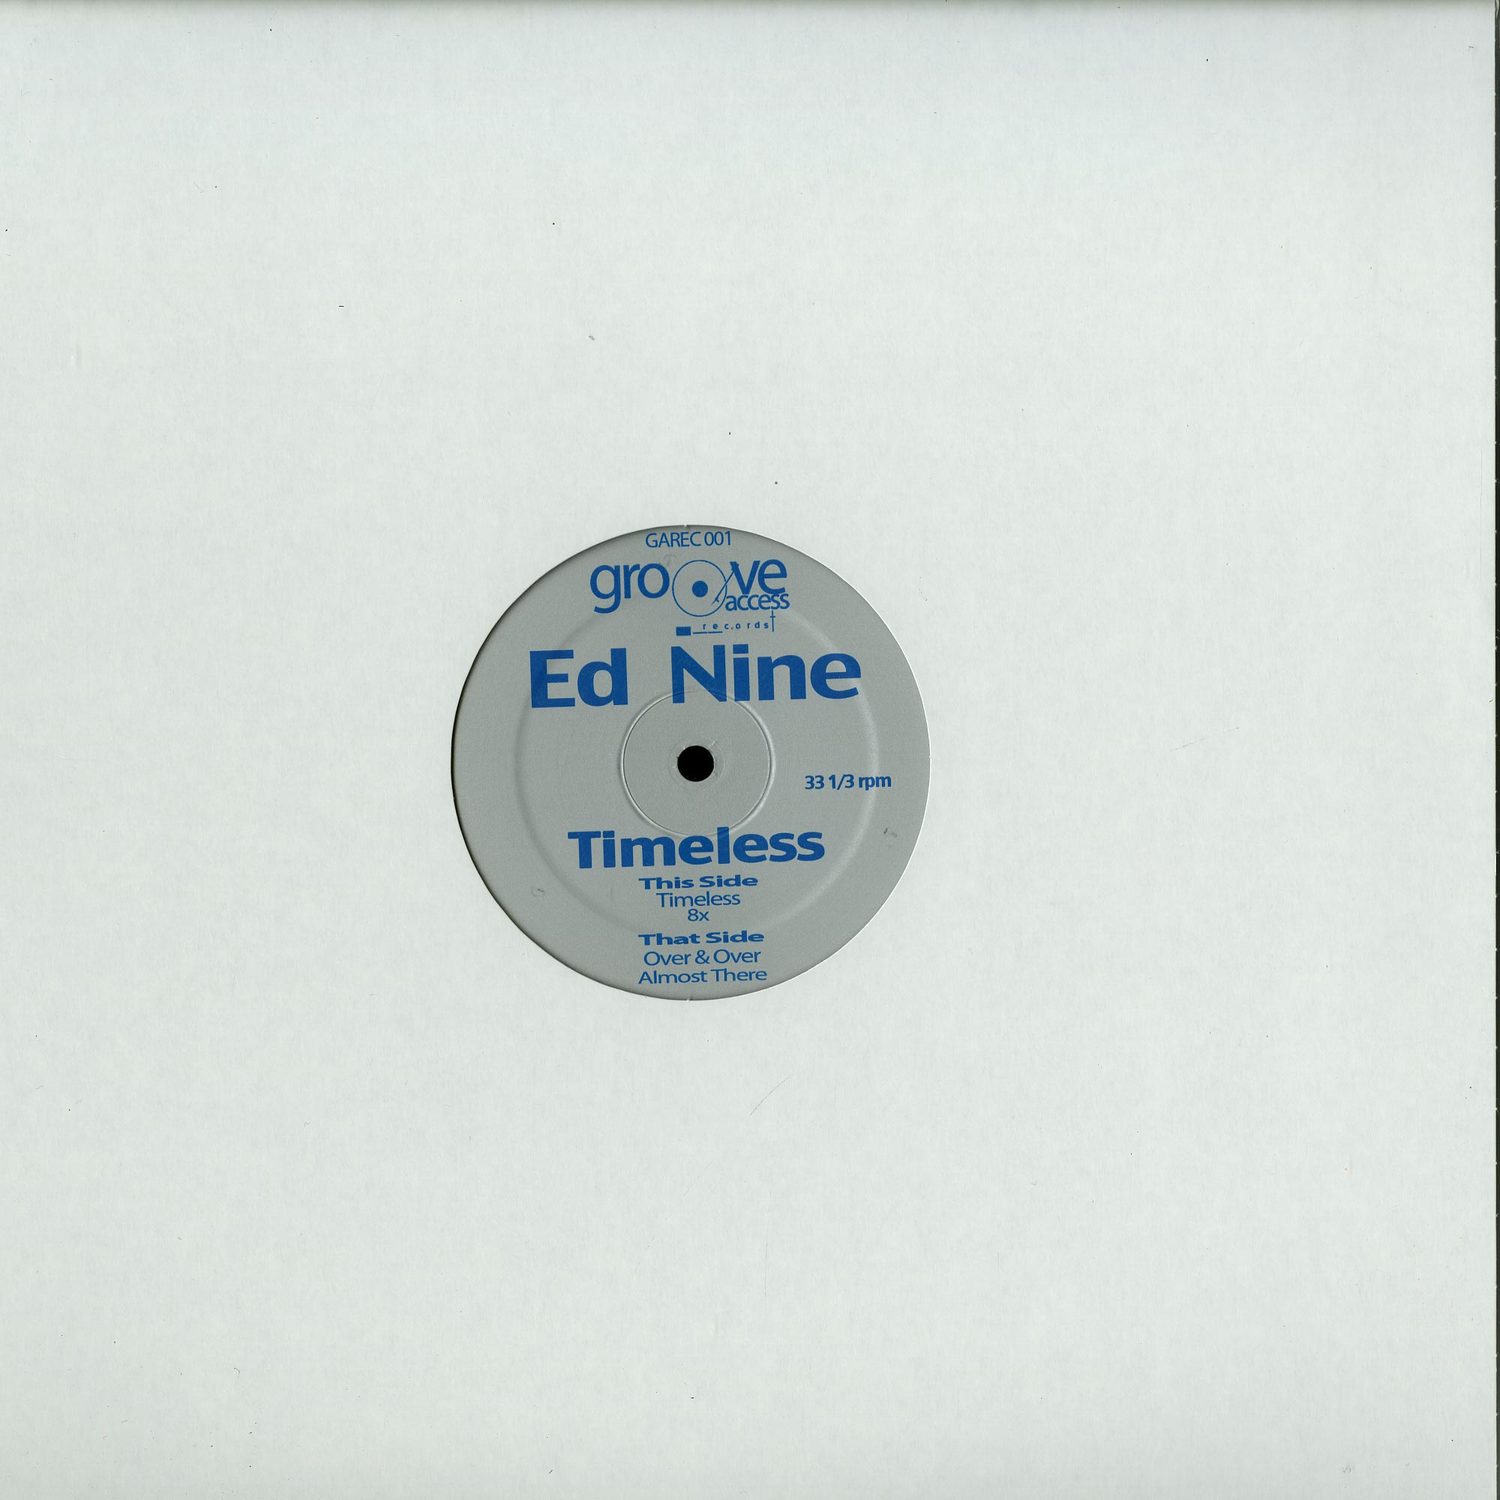 Ed Nine - TIMELESS